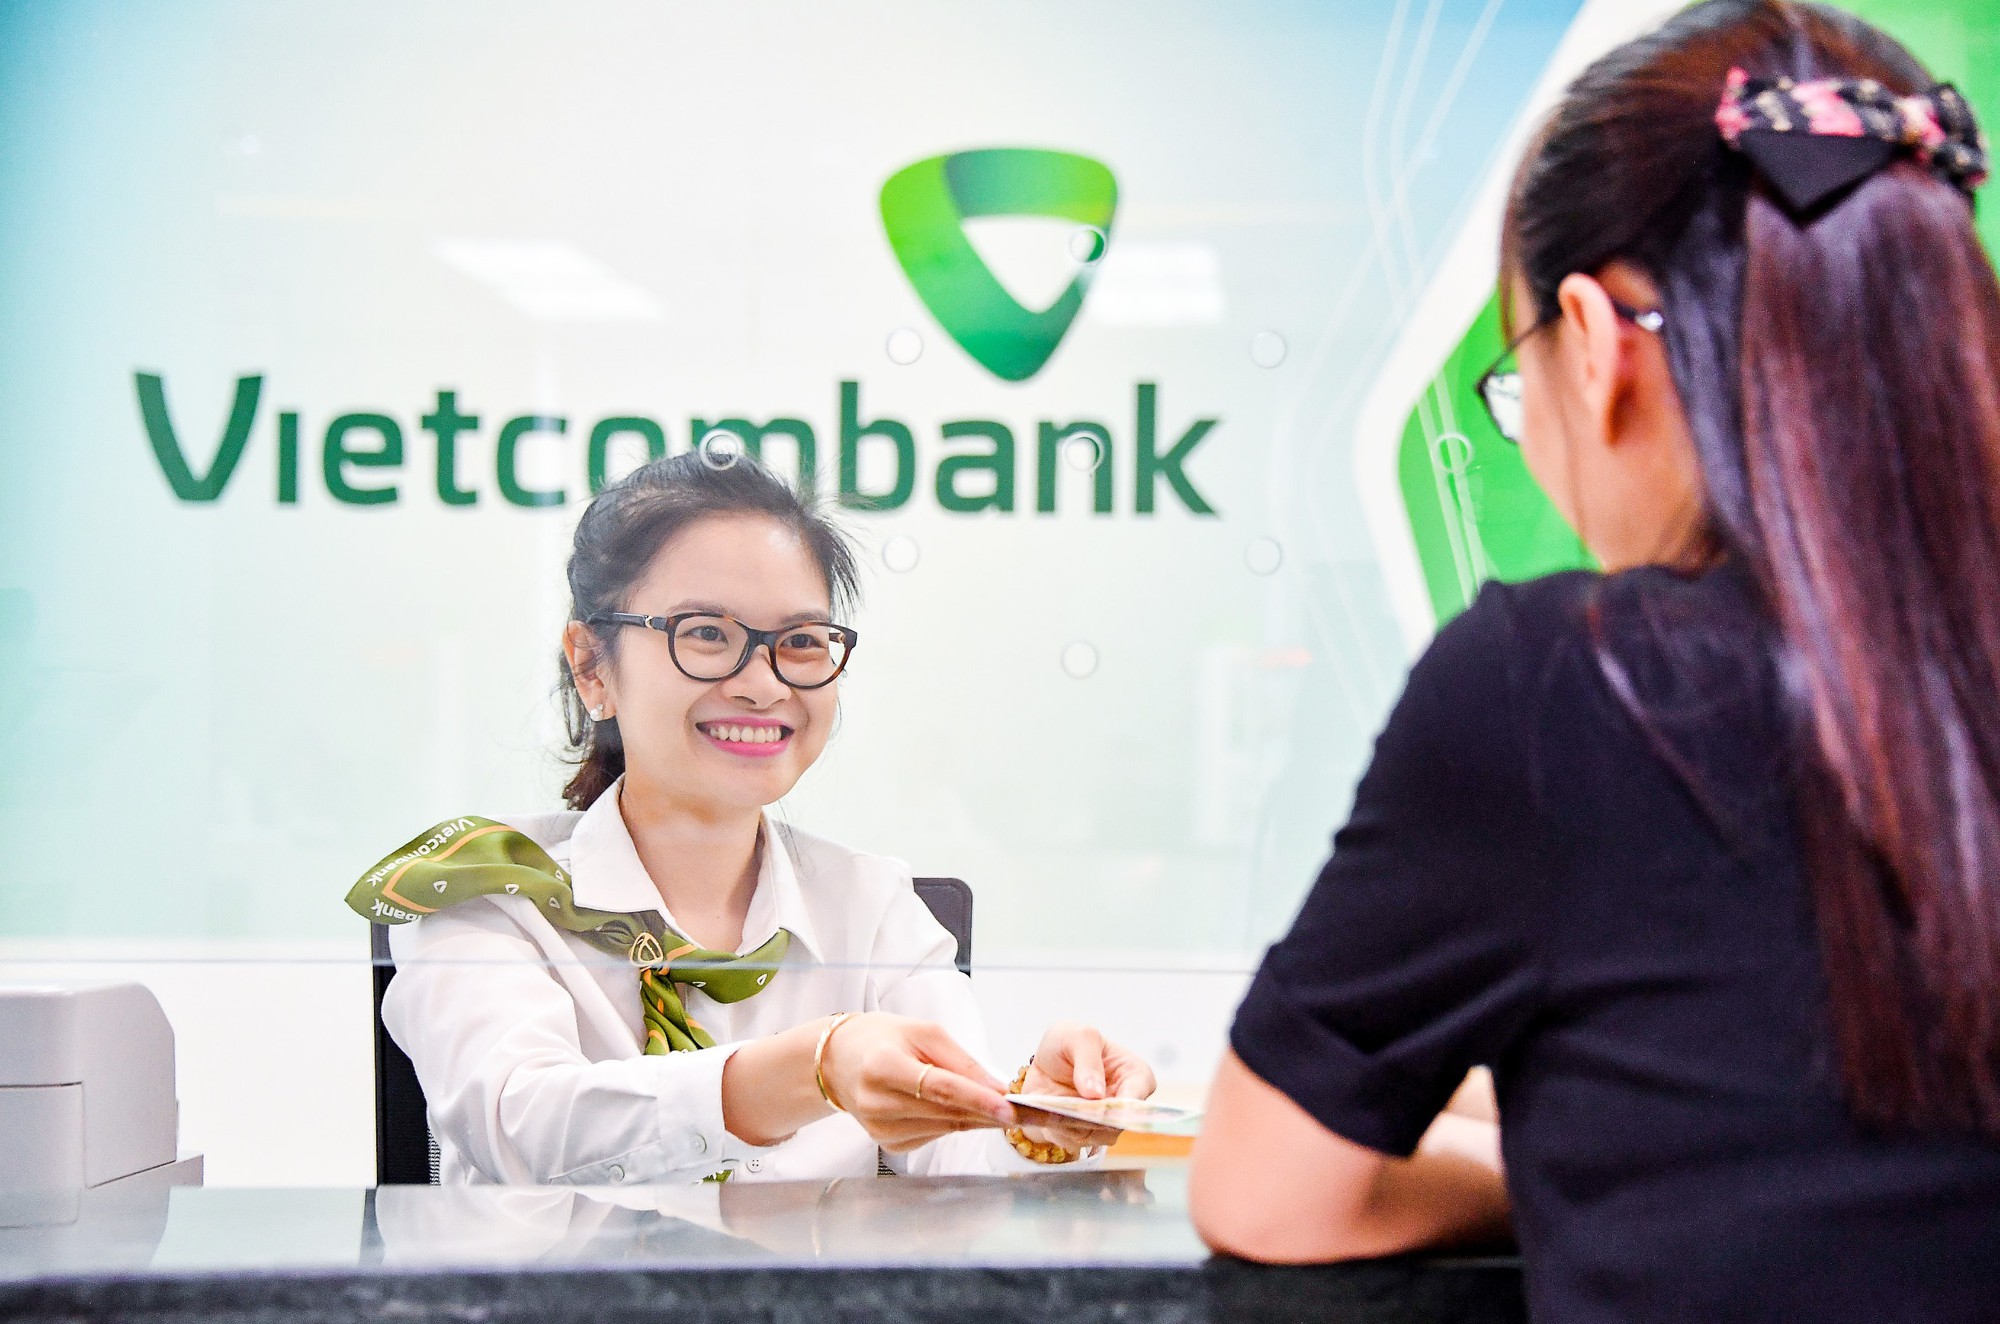 Vietcombank phát triển nhân lực chất lượng cao - Báo Người lao động